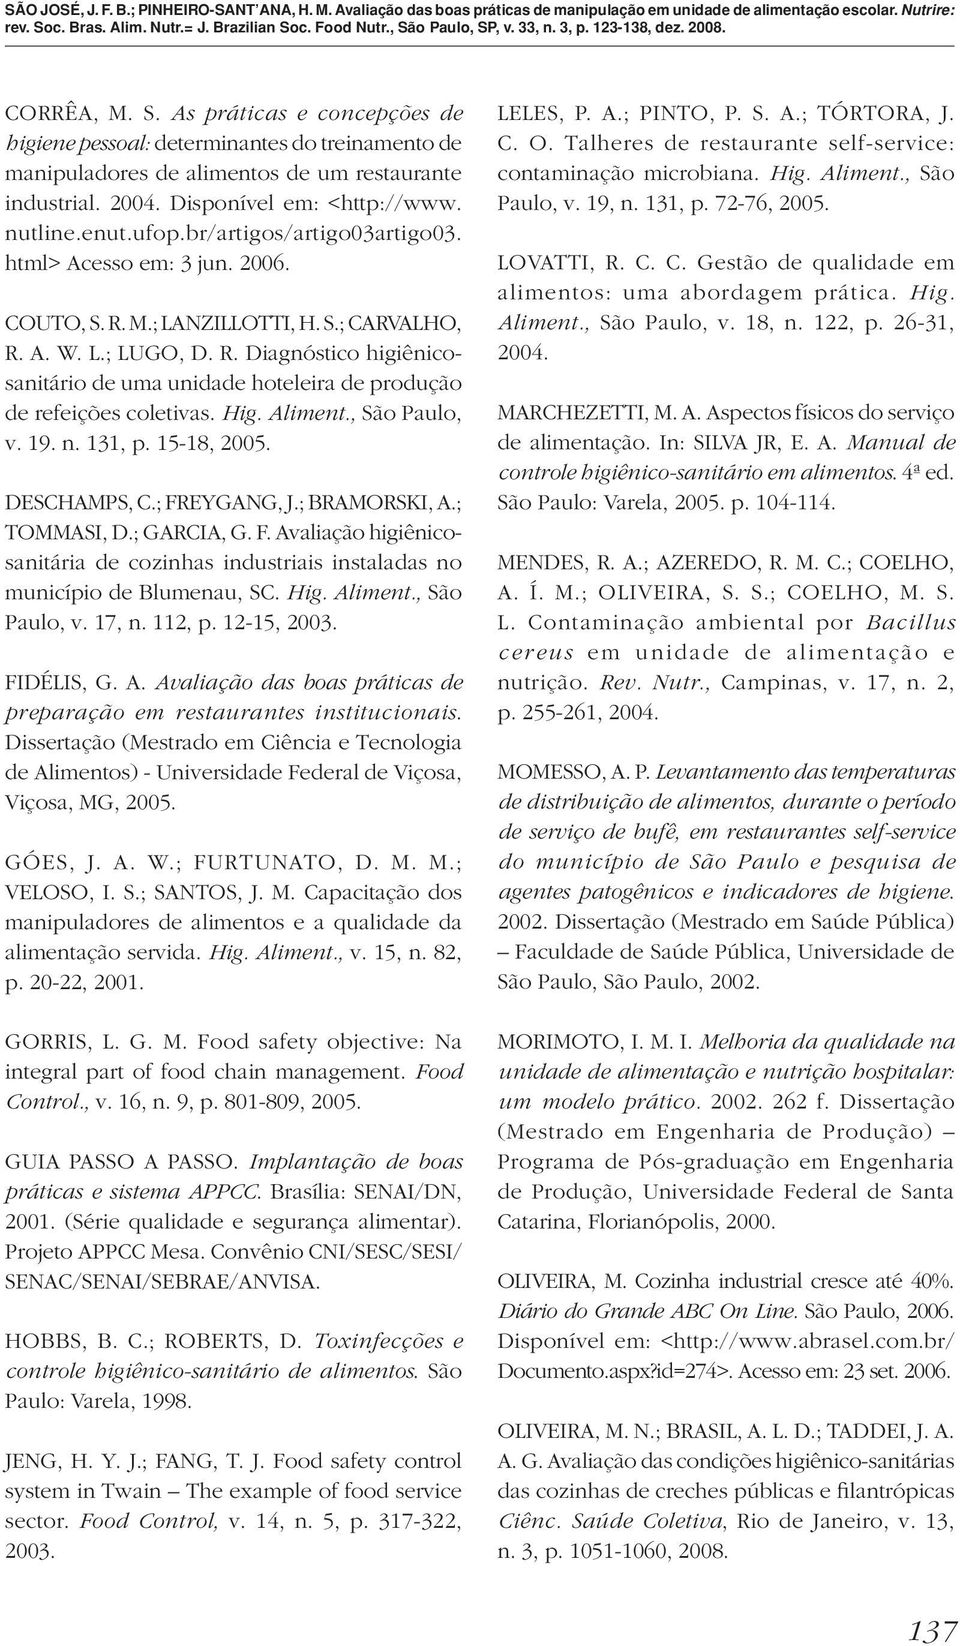 Hig. Aliment., São Paulo, v. 19. n. 131, p. 15-18, 2005. DESCHAMPS, C.; FREYGANG, J.; BRAMORSKI, A.; TOMMASI, D.; GARCIA, G. F. Avaliação higiênicosanitária de cozinhas industriais instaladas no município de Blumenau, SC.